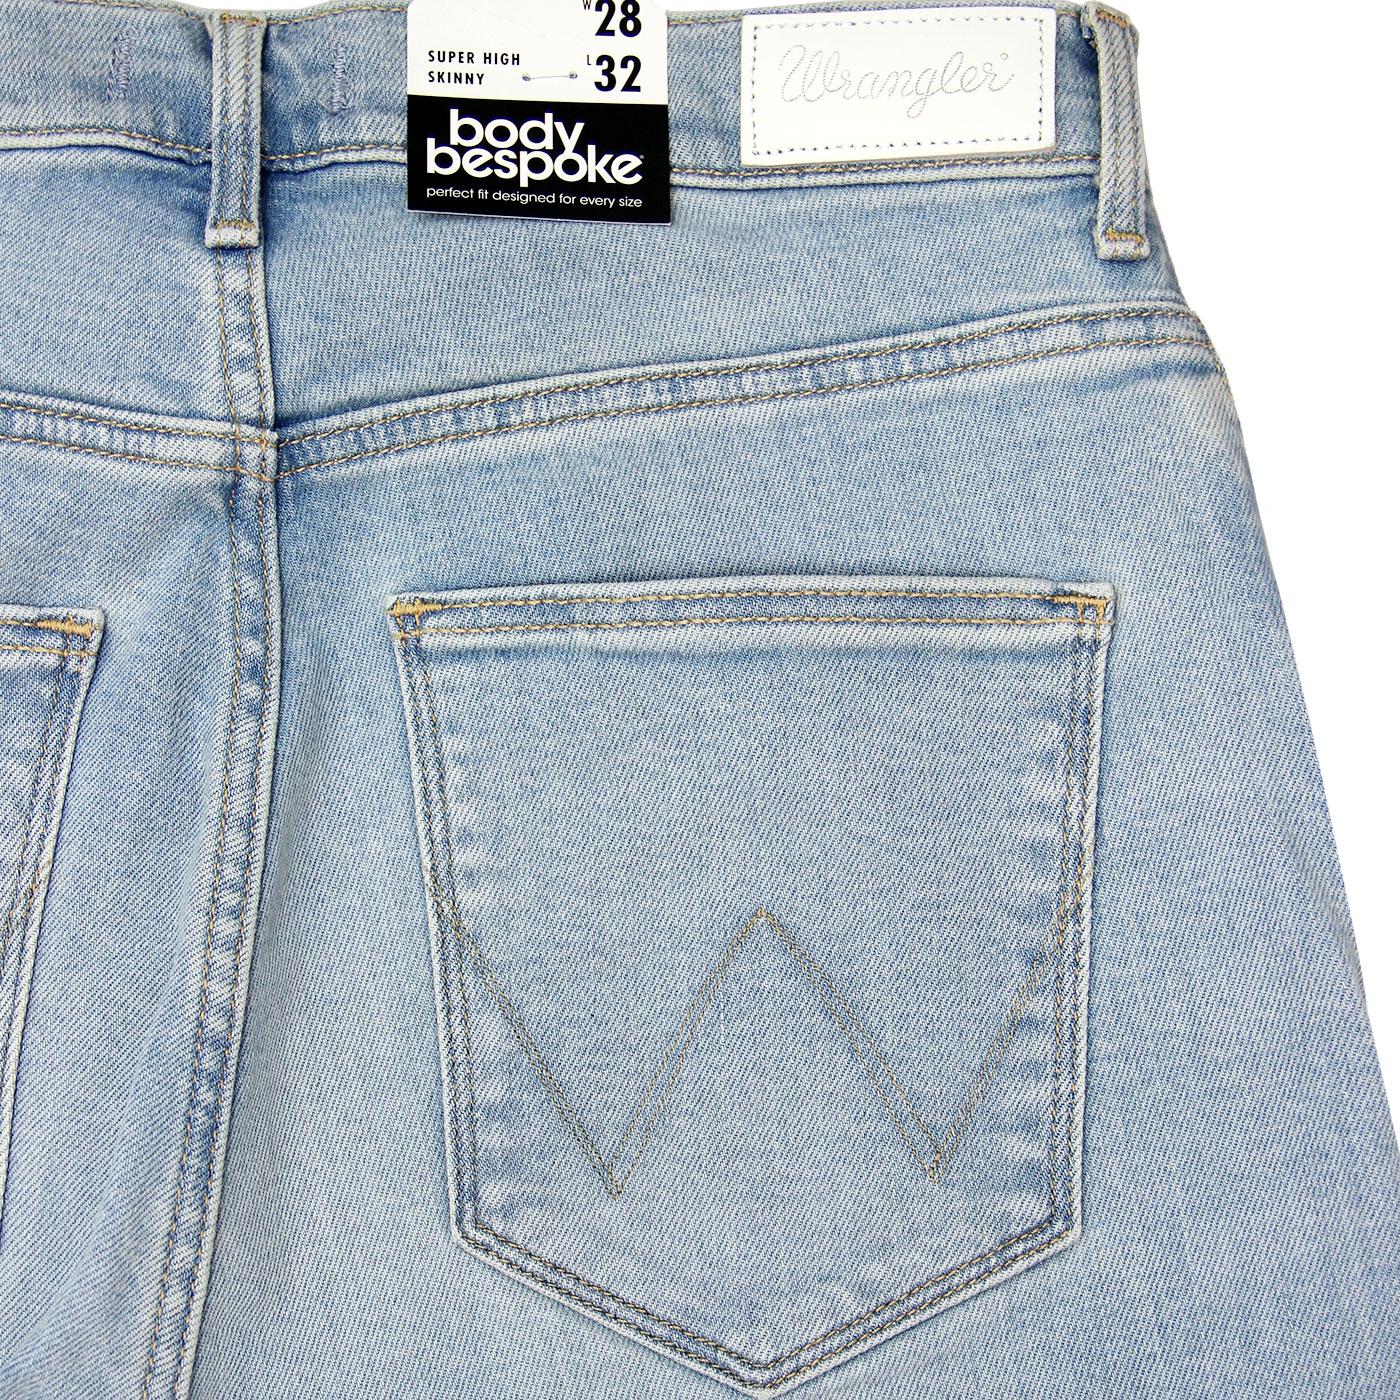 wrangler super high skinny jeans